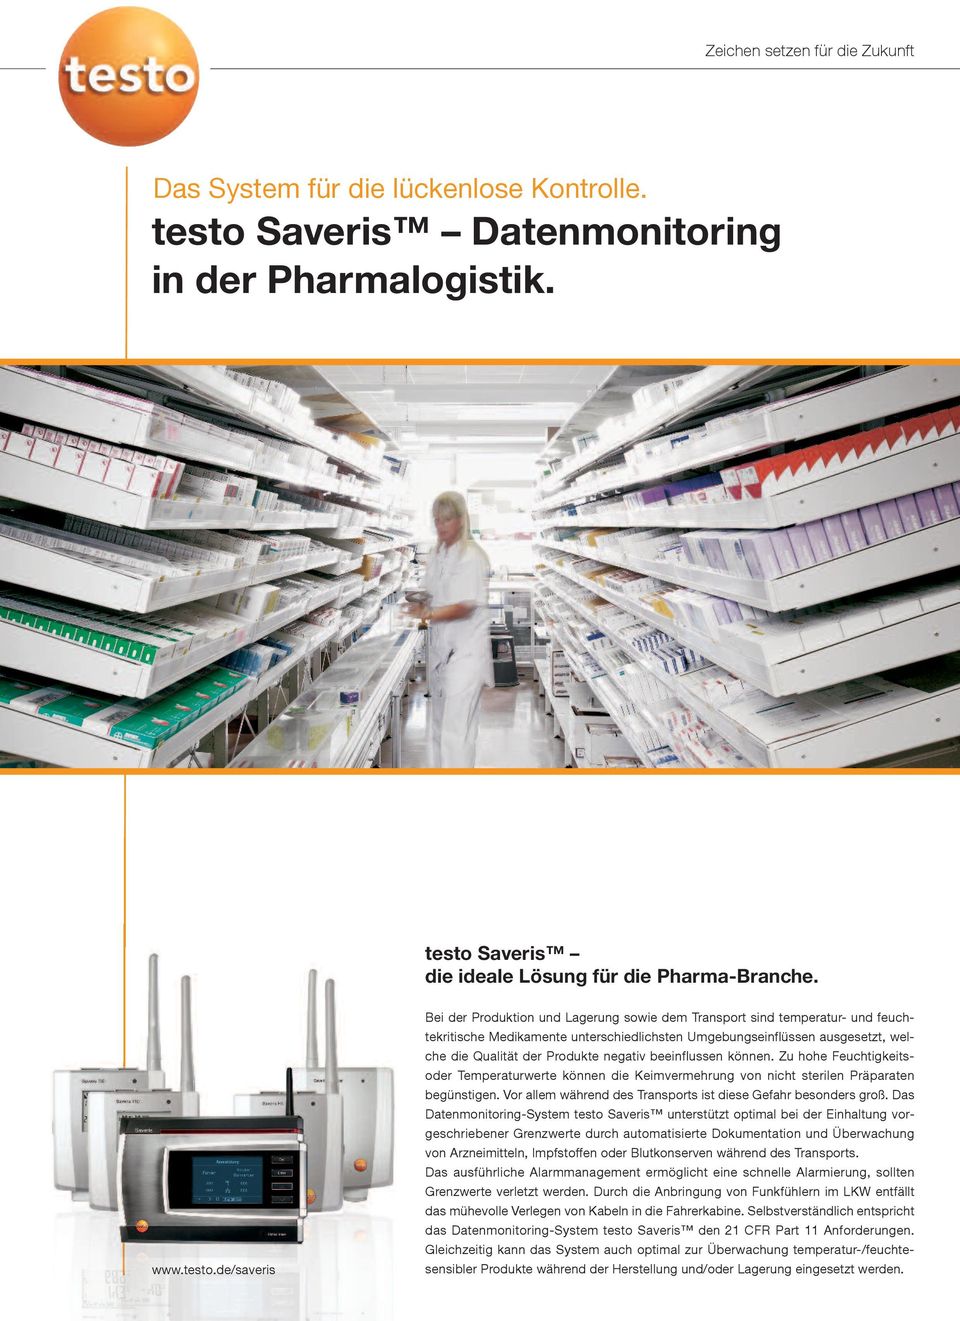 Saveris die ideale Lösung für die Pharma-Branche. www.testo.